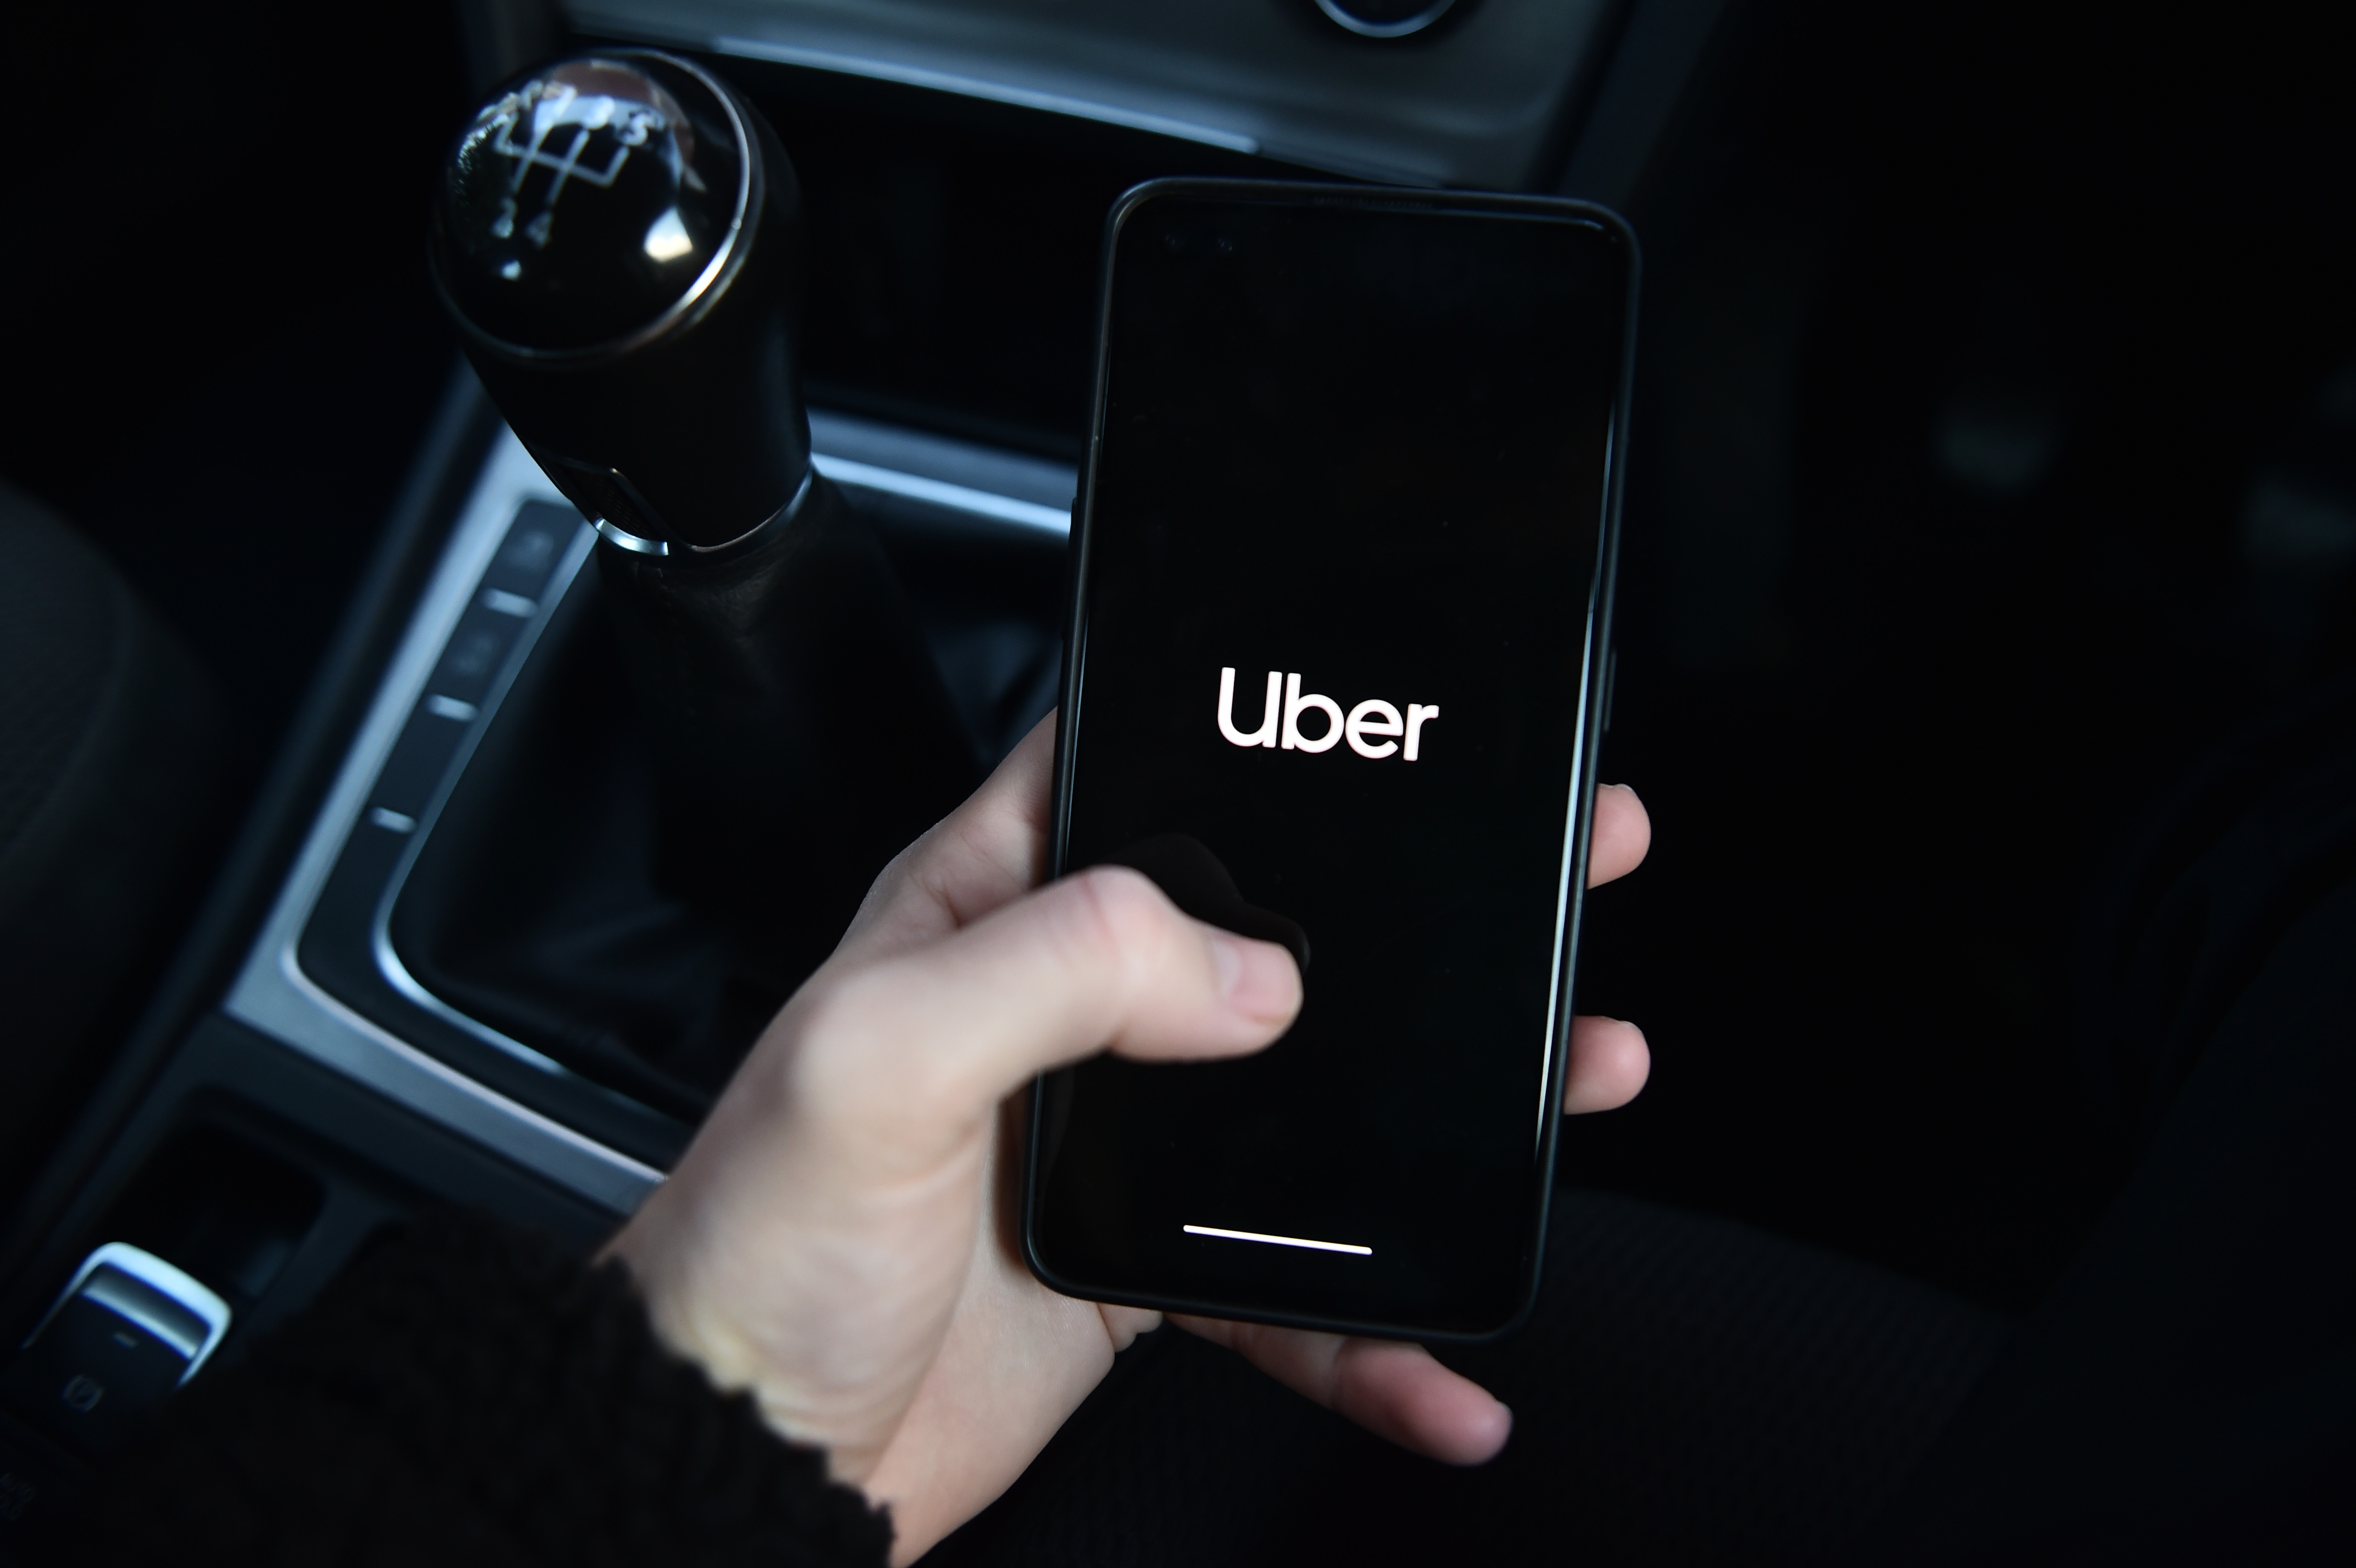 Uber respaldó a los usuarios del AICM ante imposición de multas: “Tienen derecho a elegir su transporte”